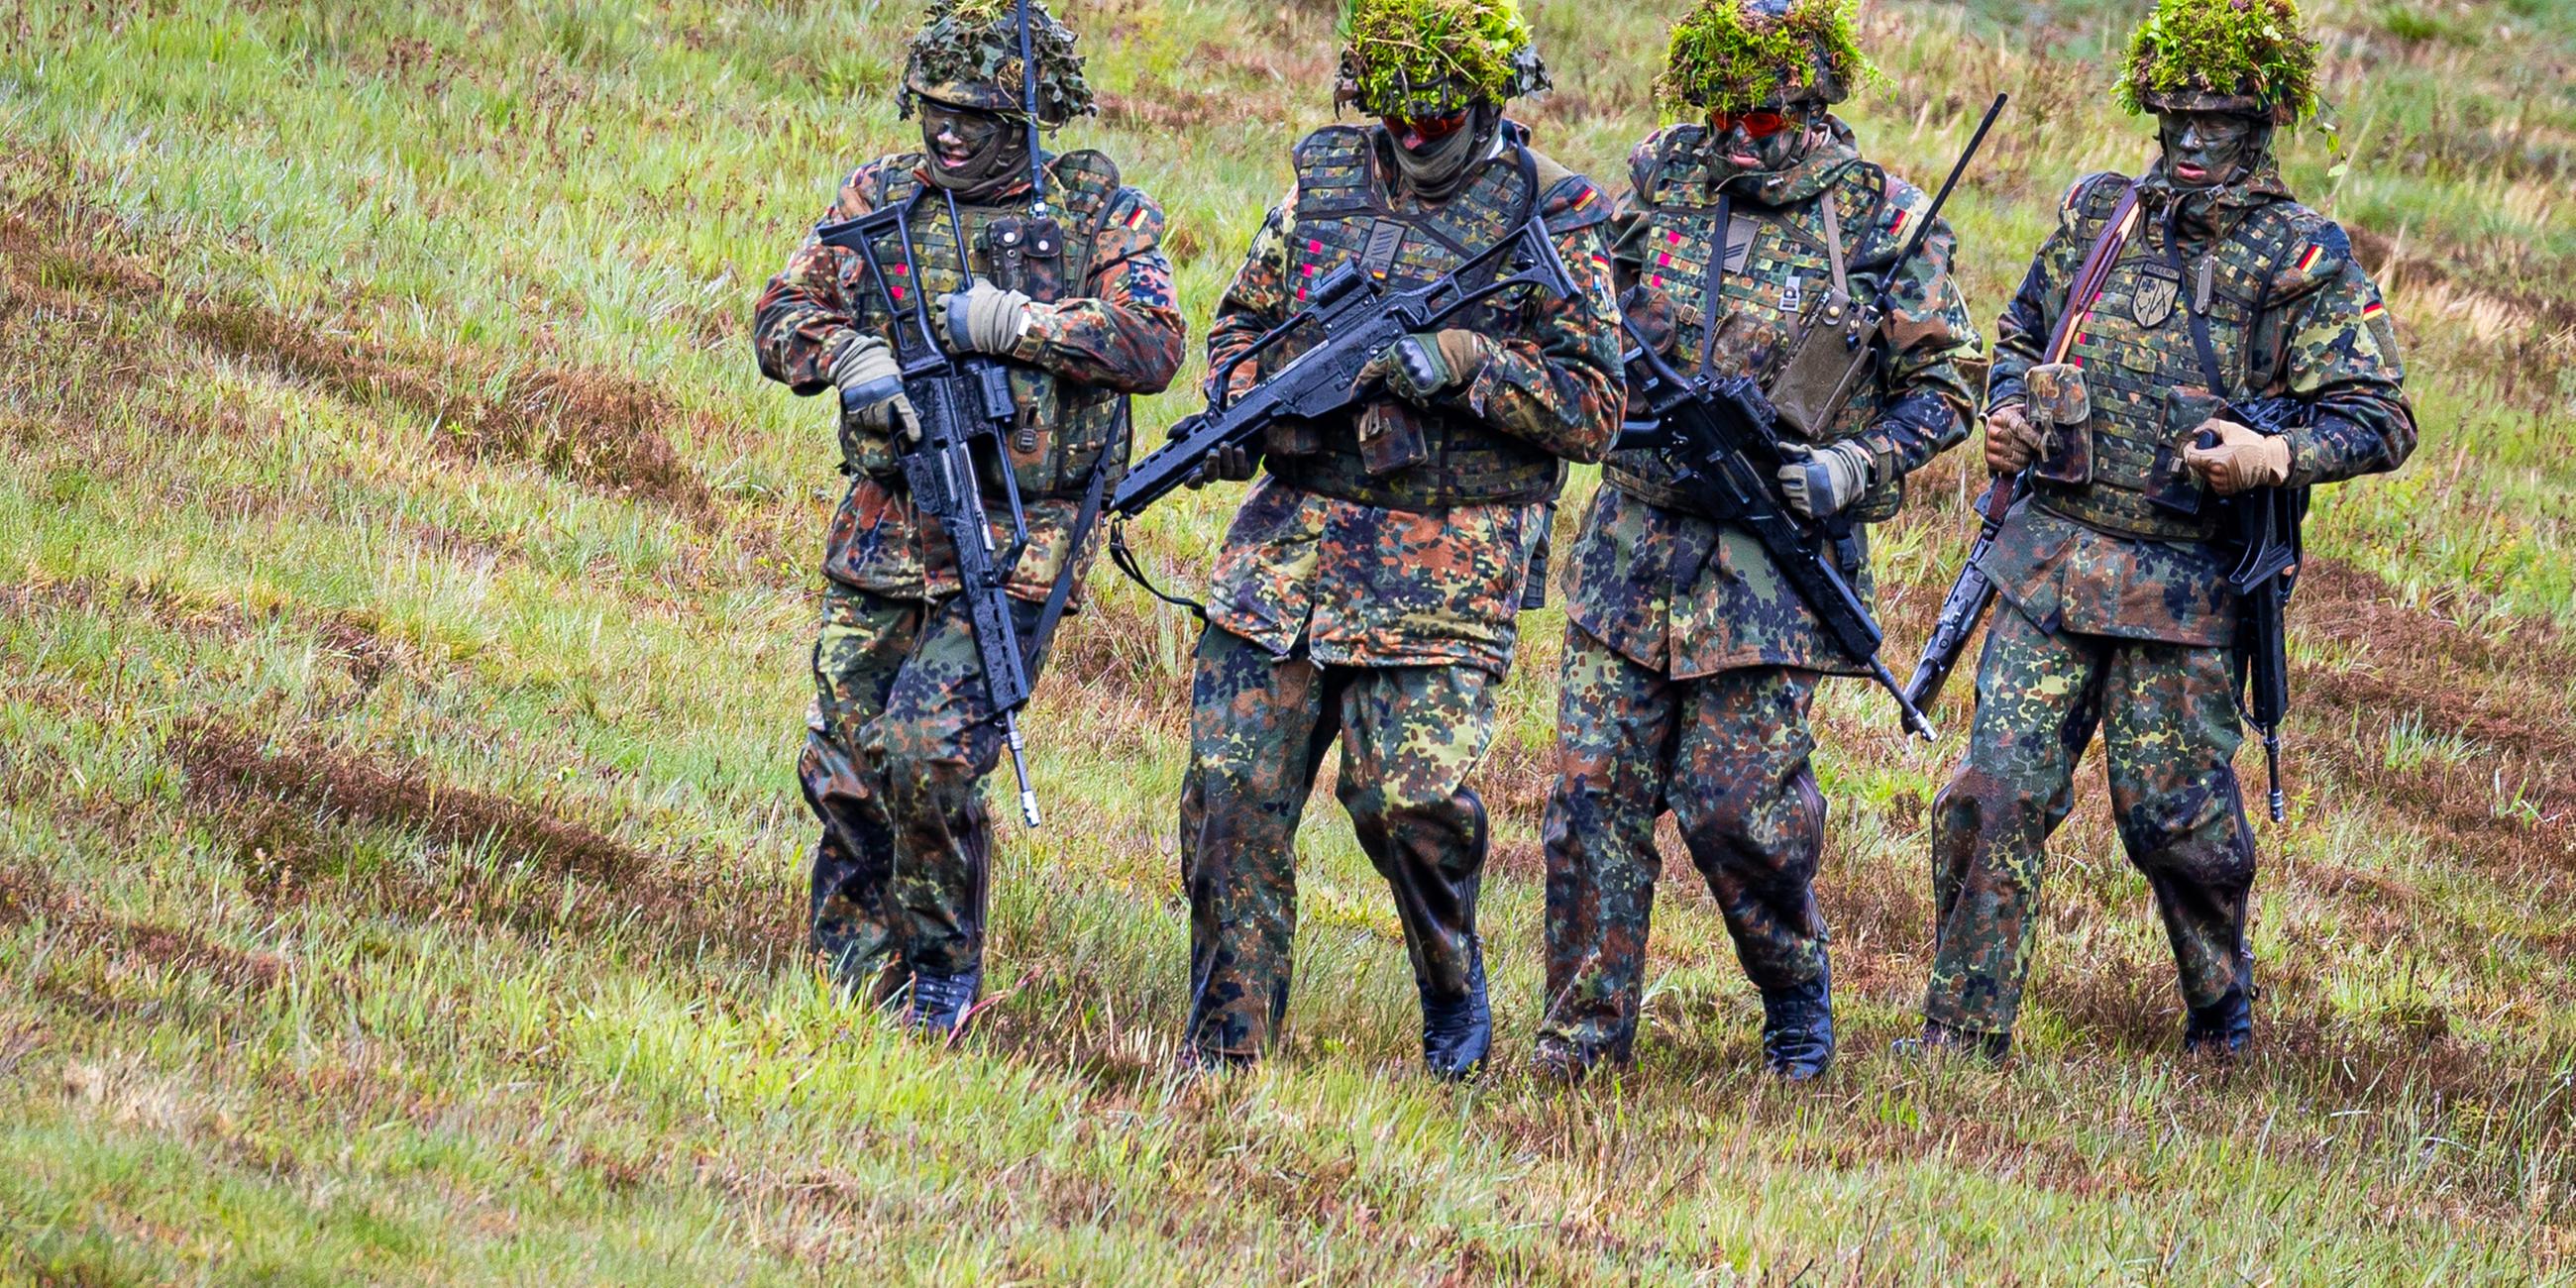 Vier vermumte Personen in militärischem Camouflage mit Zweigen auf den Helmen und Waffen in den Händen stehen etwas ungelenk nebeneinander auf einer Wiese.